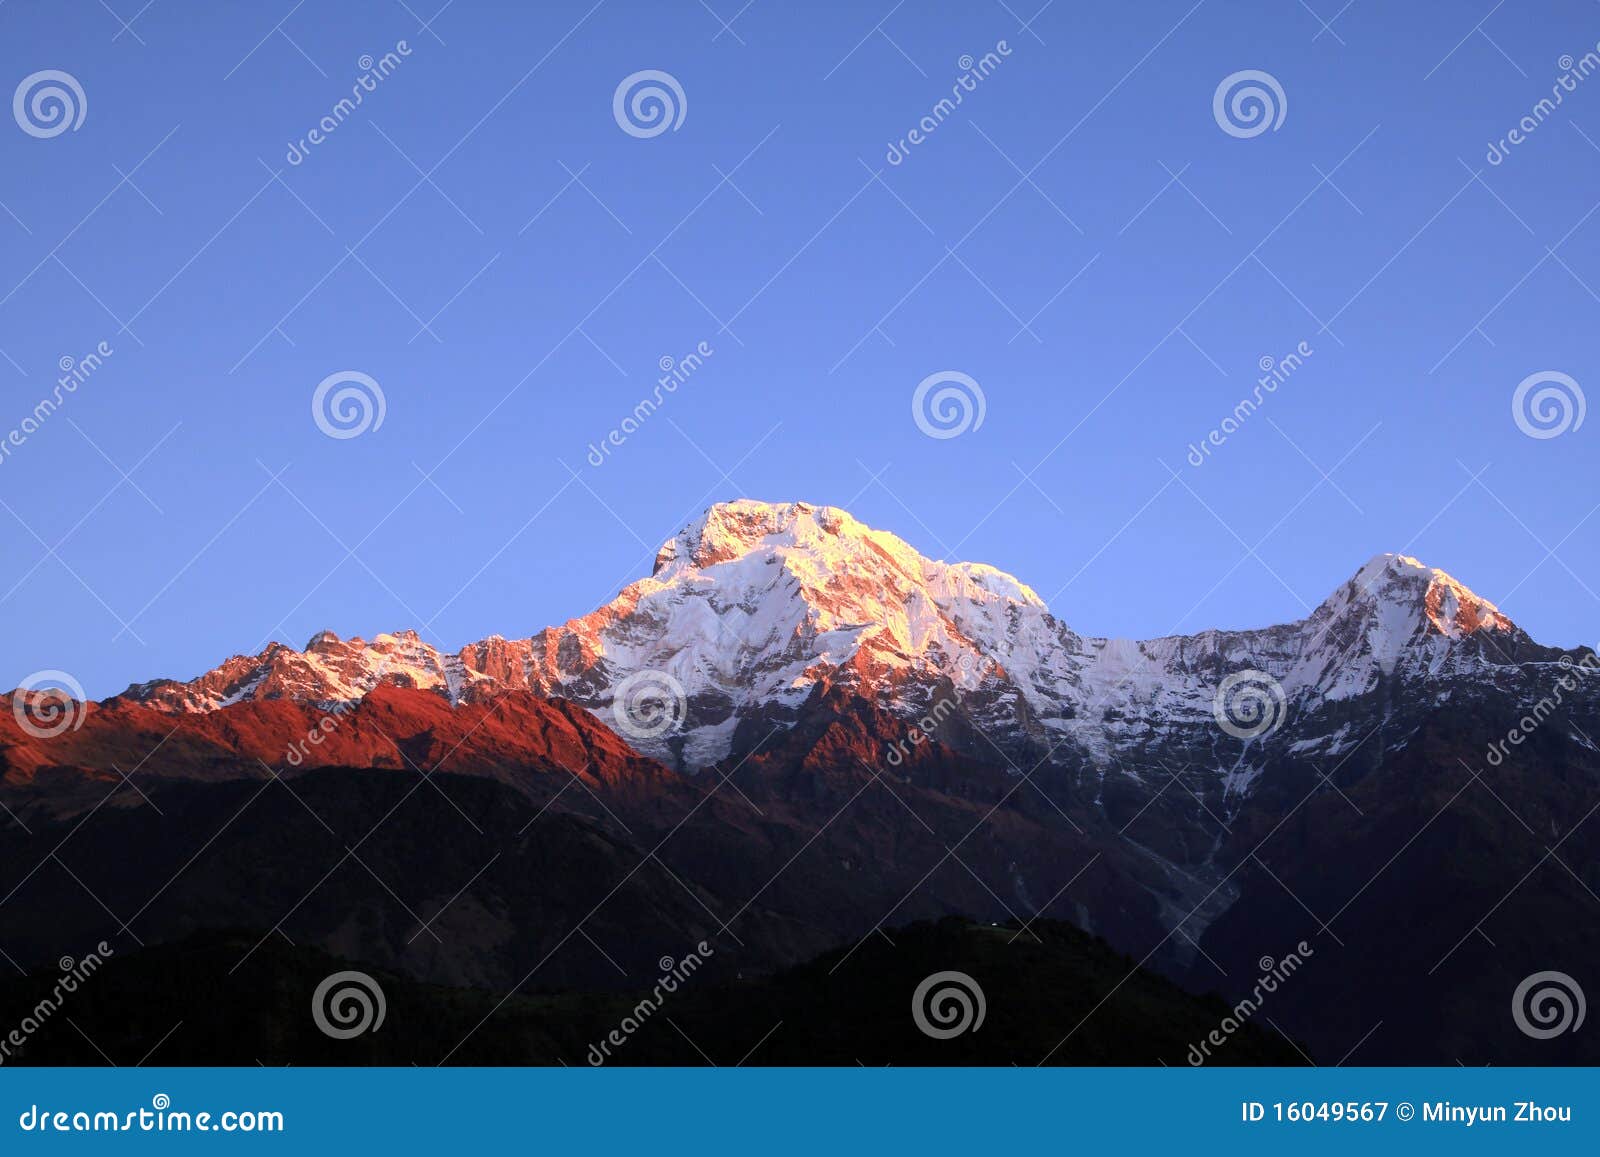 the himalaya mountain peak